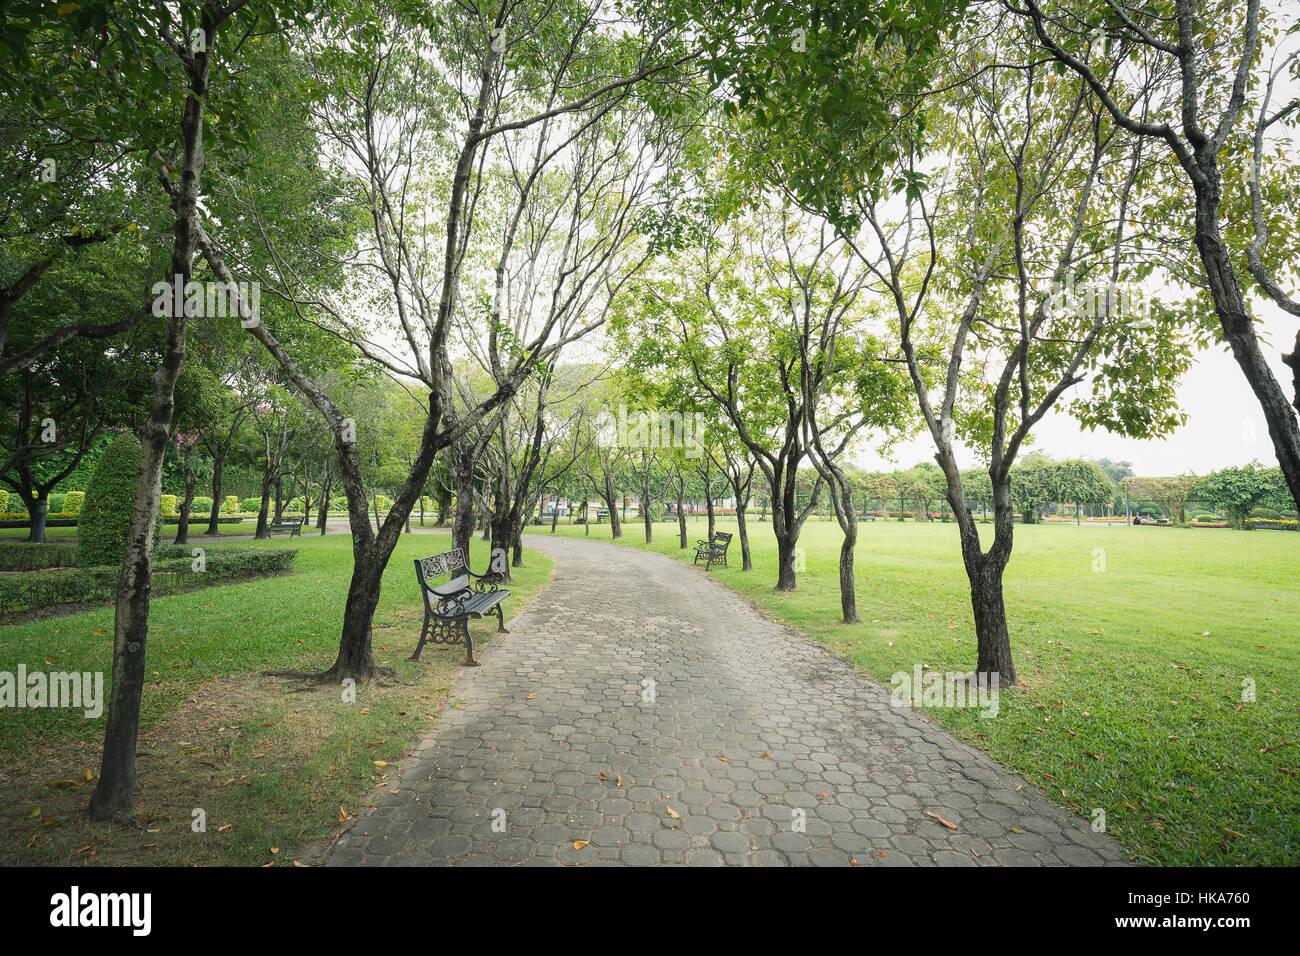 Pasillo interior verde público parque rodeado por árboles pequeños y el pasto verde del suelo. Vintage de hierro bancas poner a la izquierda y derecha de la pasarela. Foto de stock